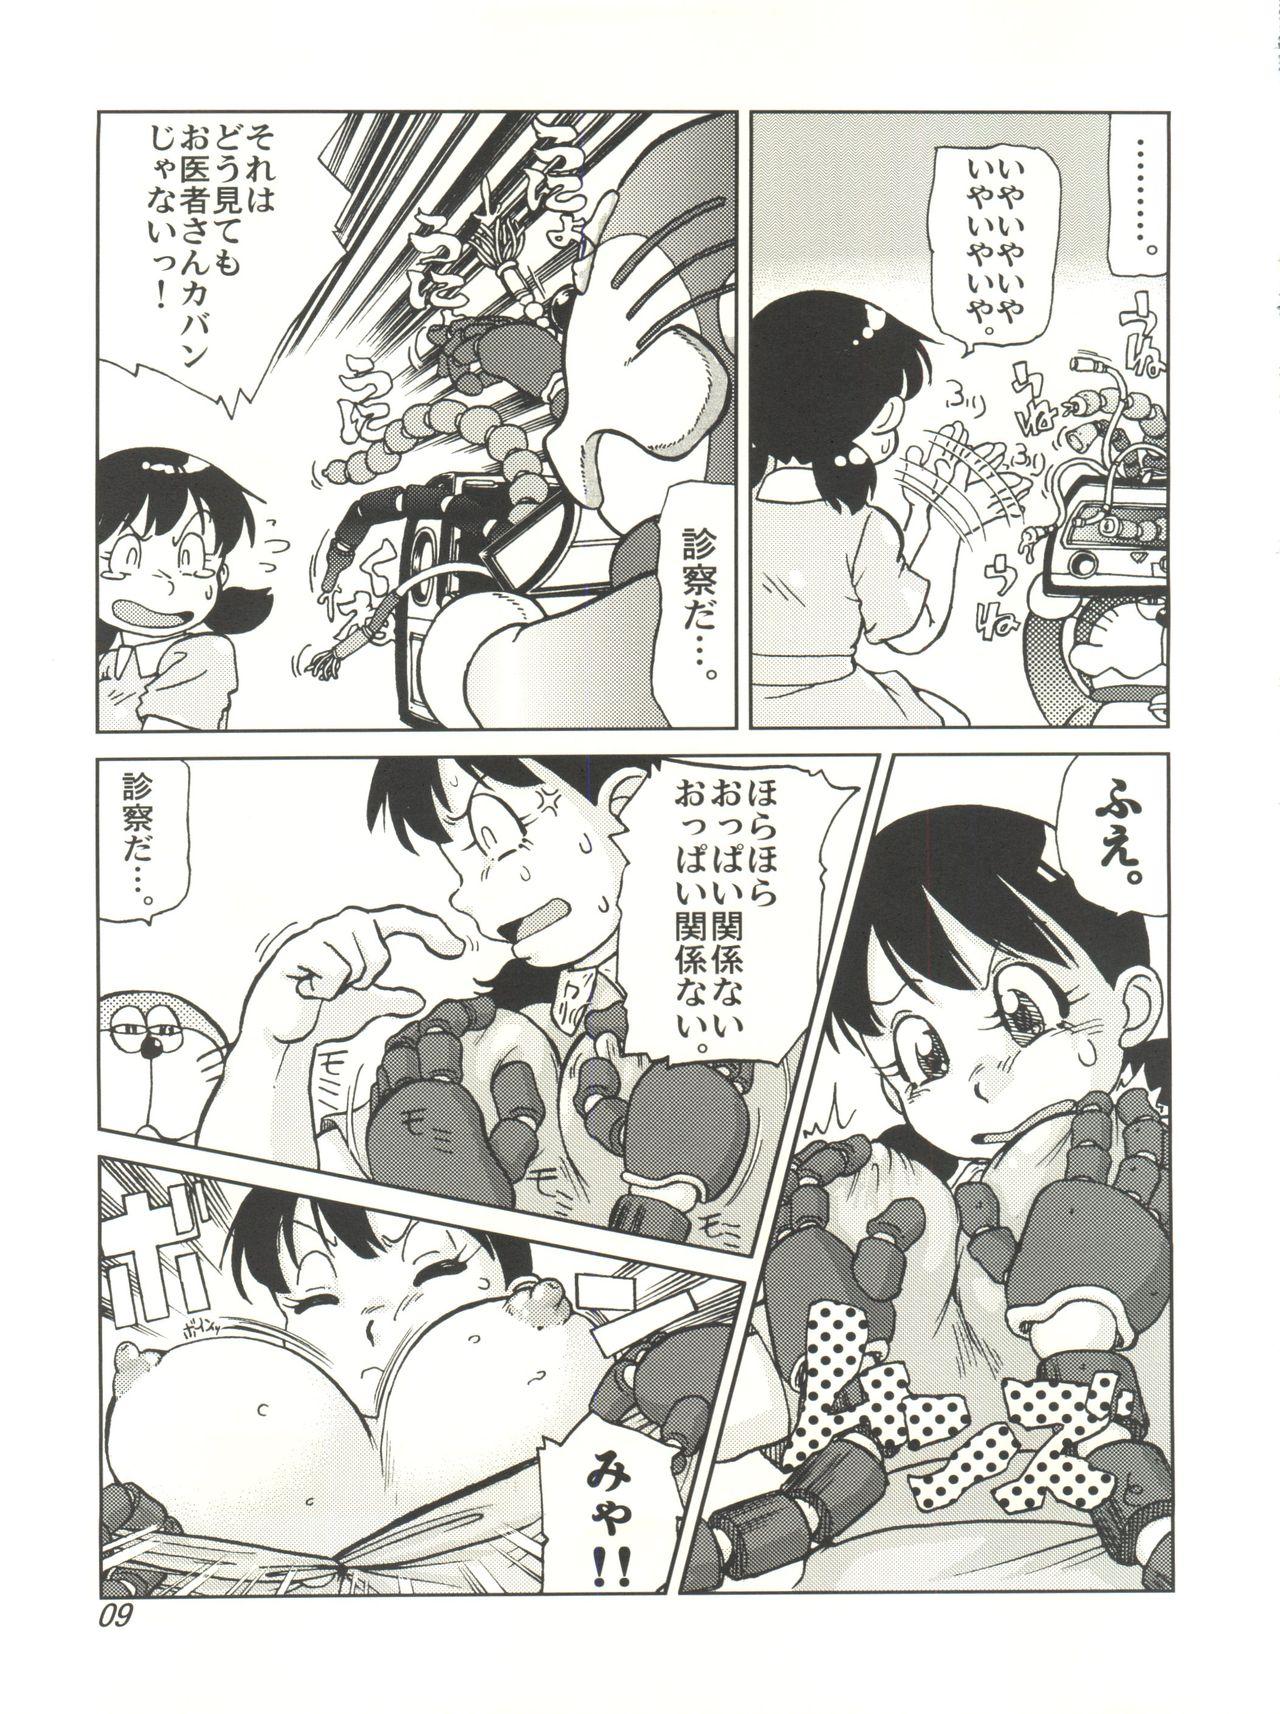 Women Sucking Dicks COUNTER DORA SHIZUKA & KAKUGARI GUARDIAN - Doraemon Forbidden - Page 8